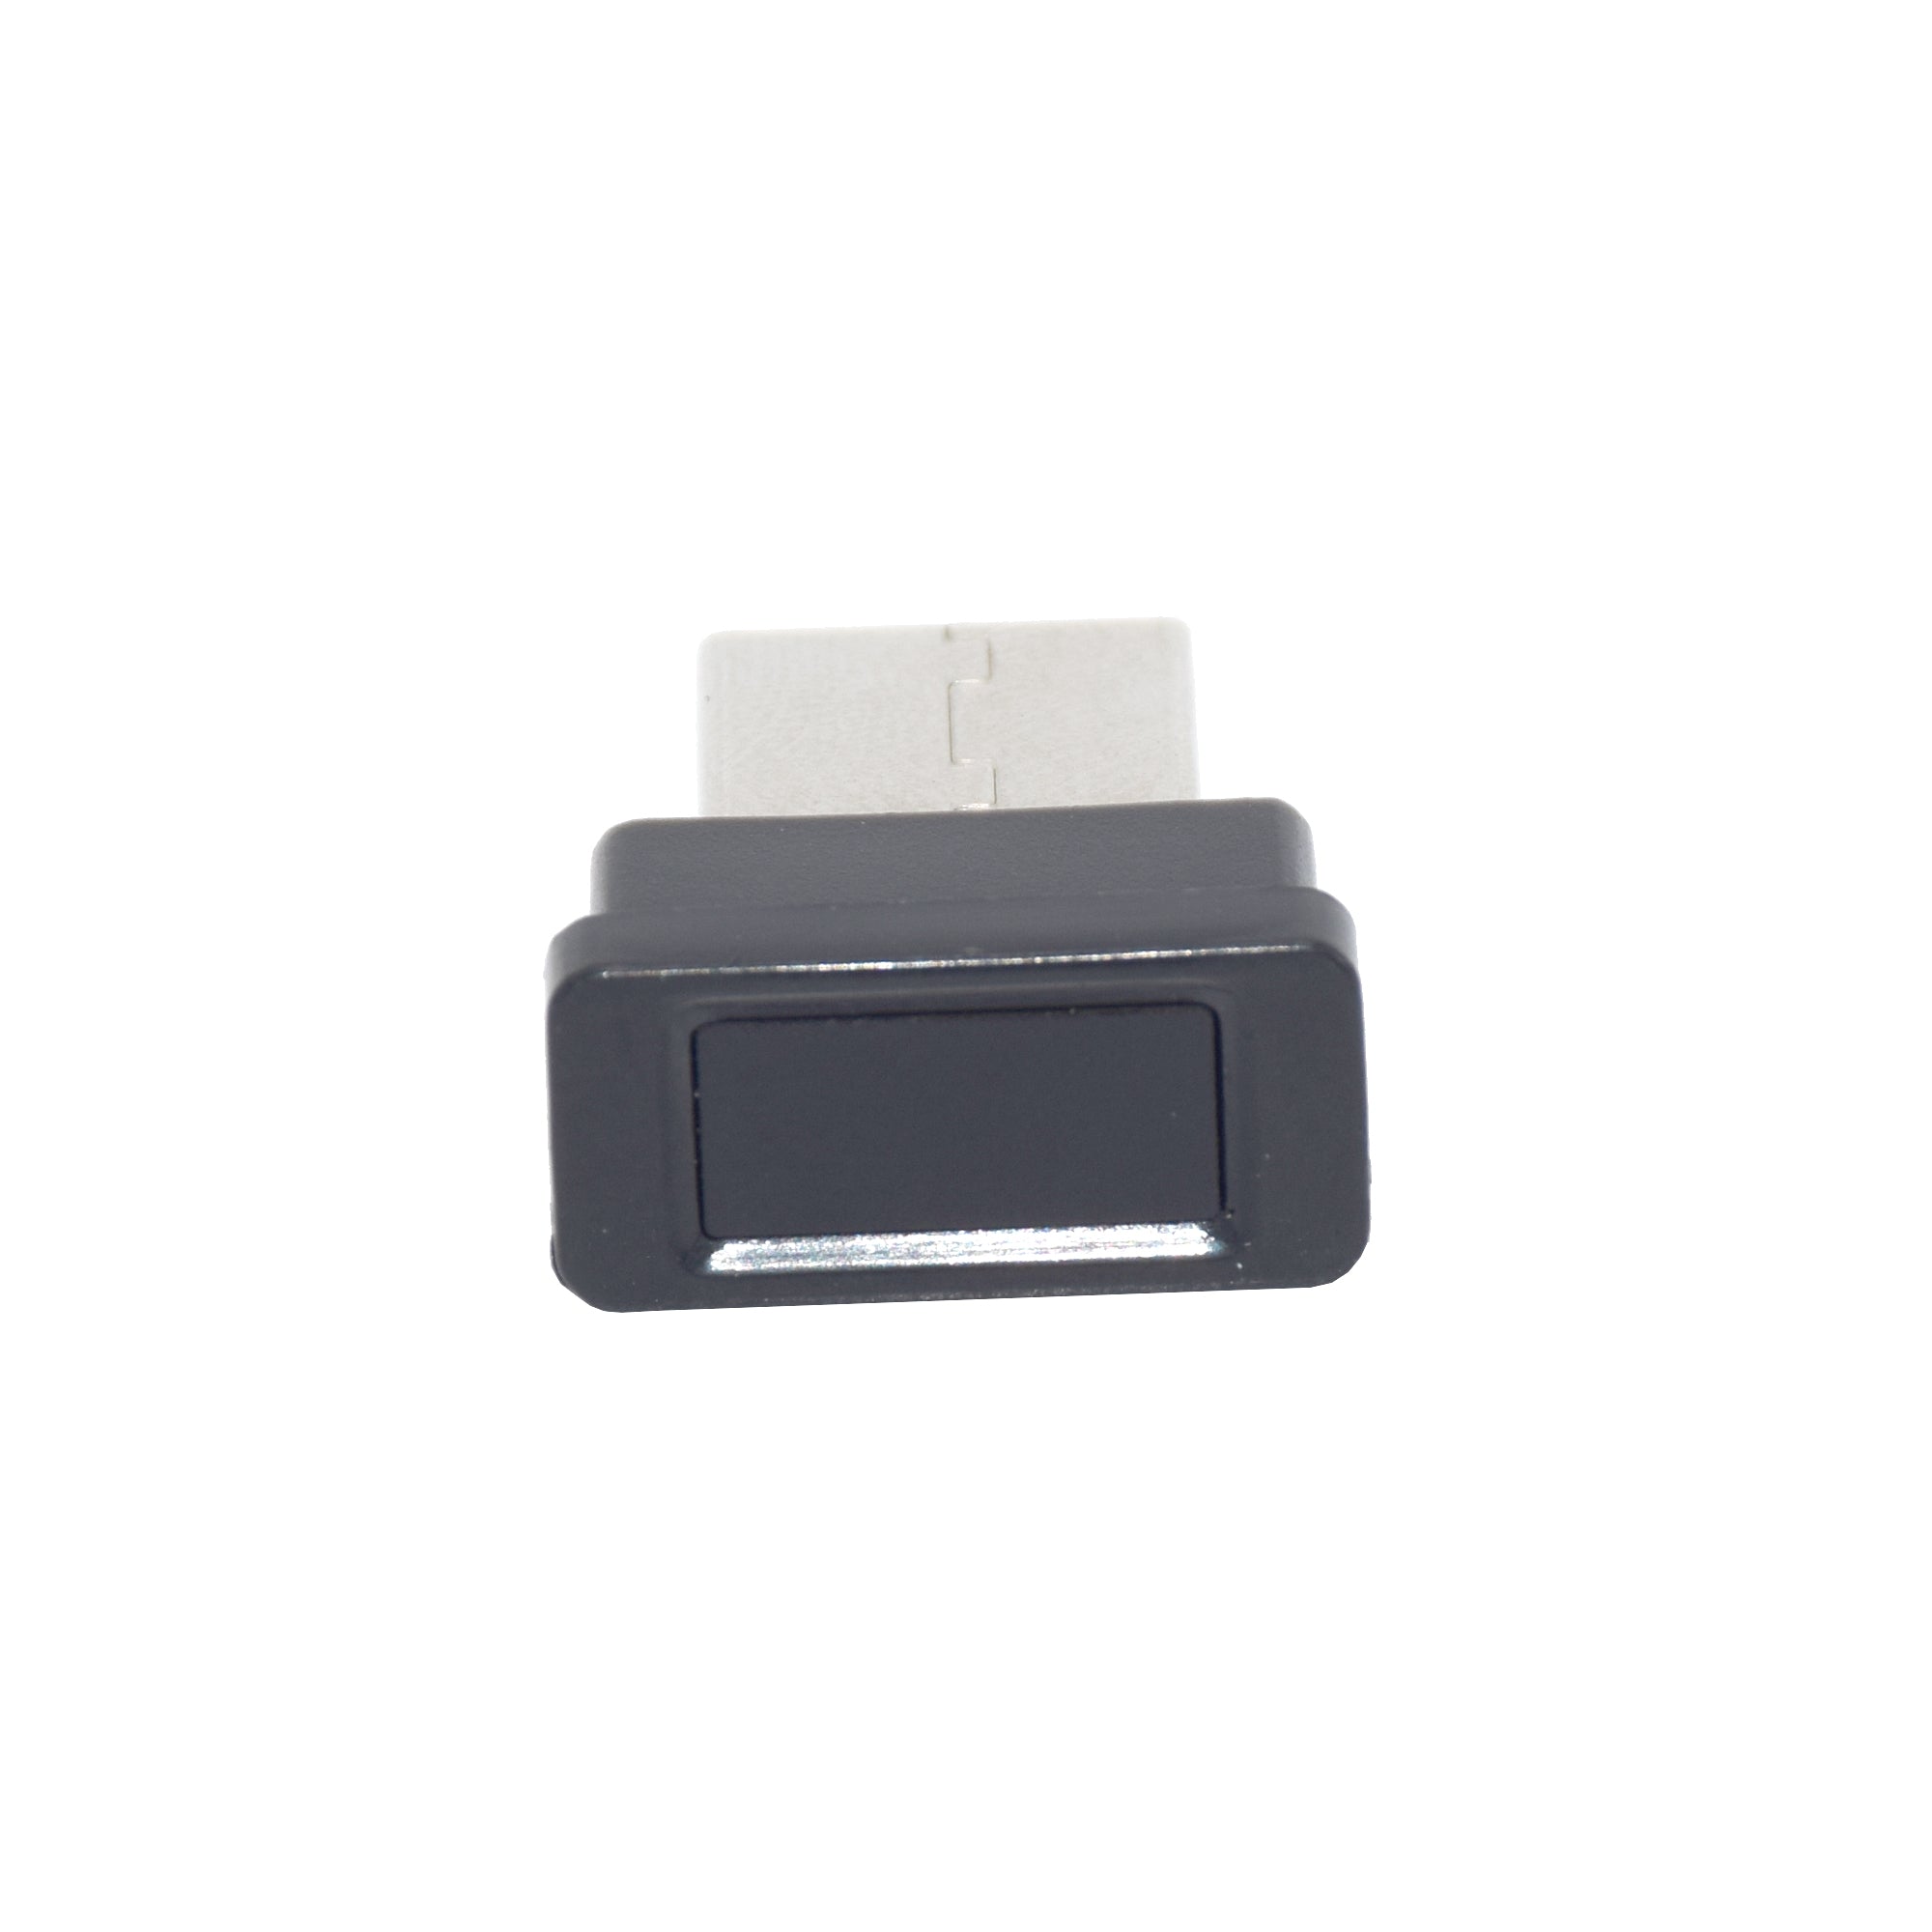 USB-Fingerabdruck-Lese modul Geräte erkennung für Windows 10/11